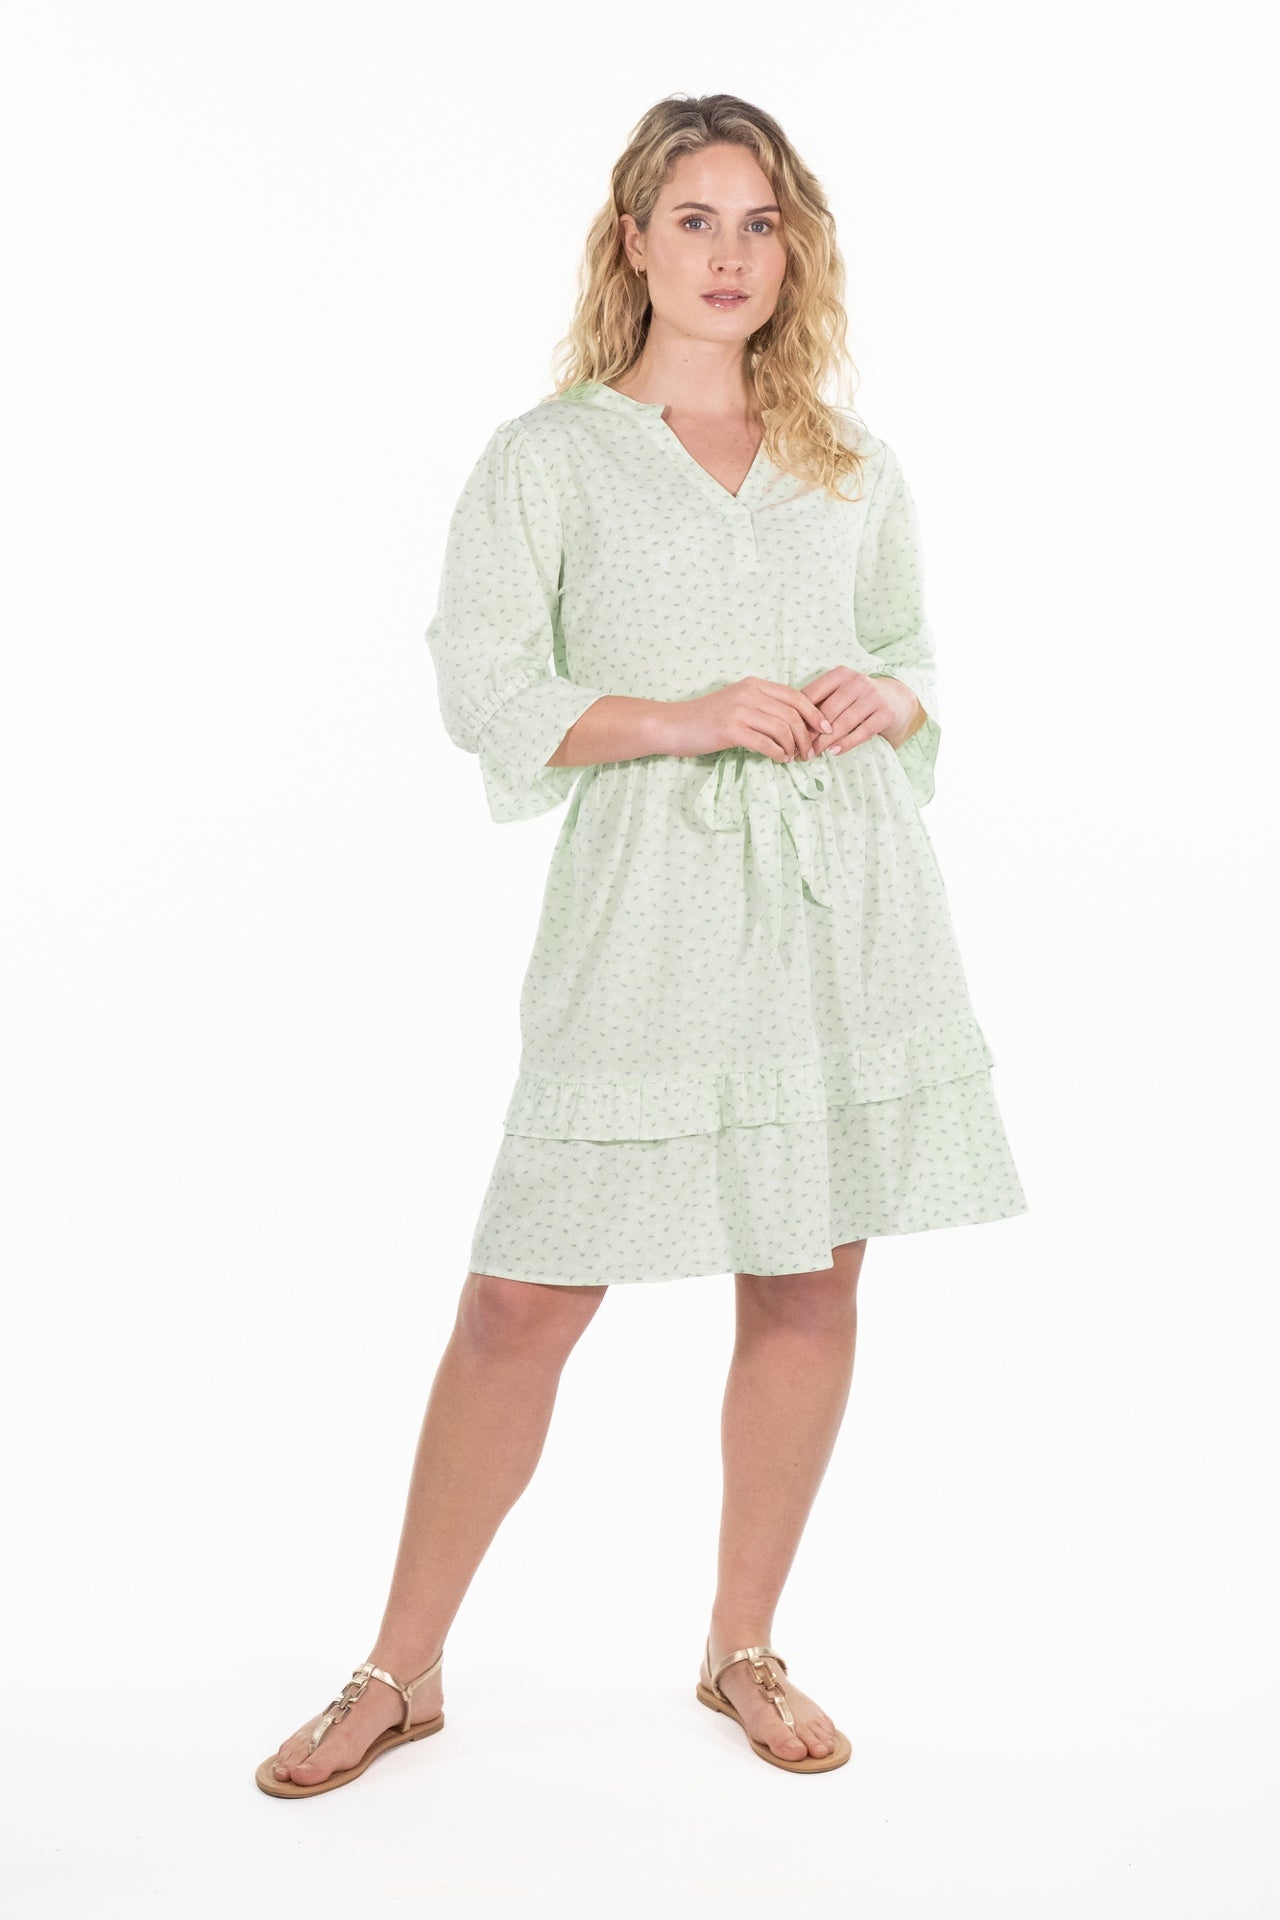 Olivia Green Print Ruffle Dress - Rupert and Buckley - Dress